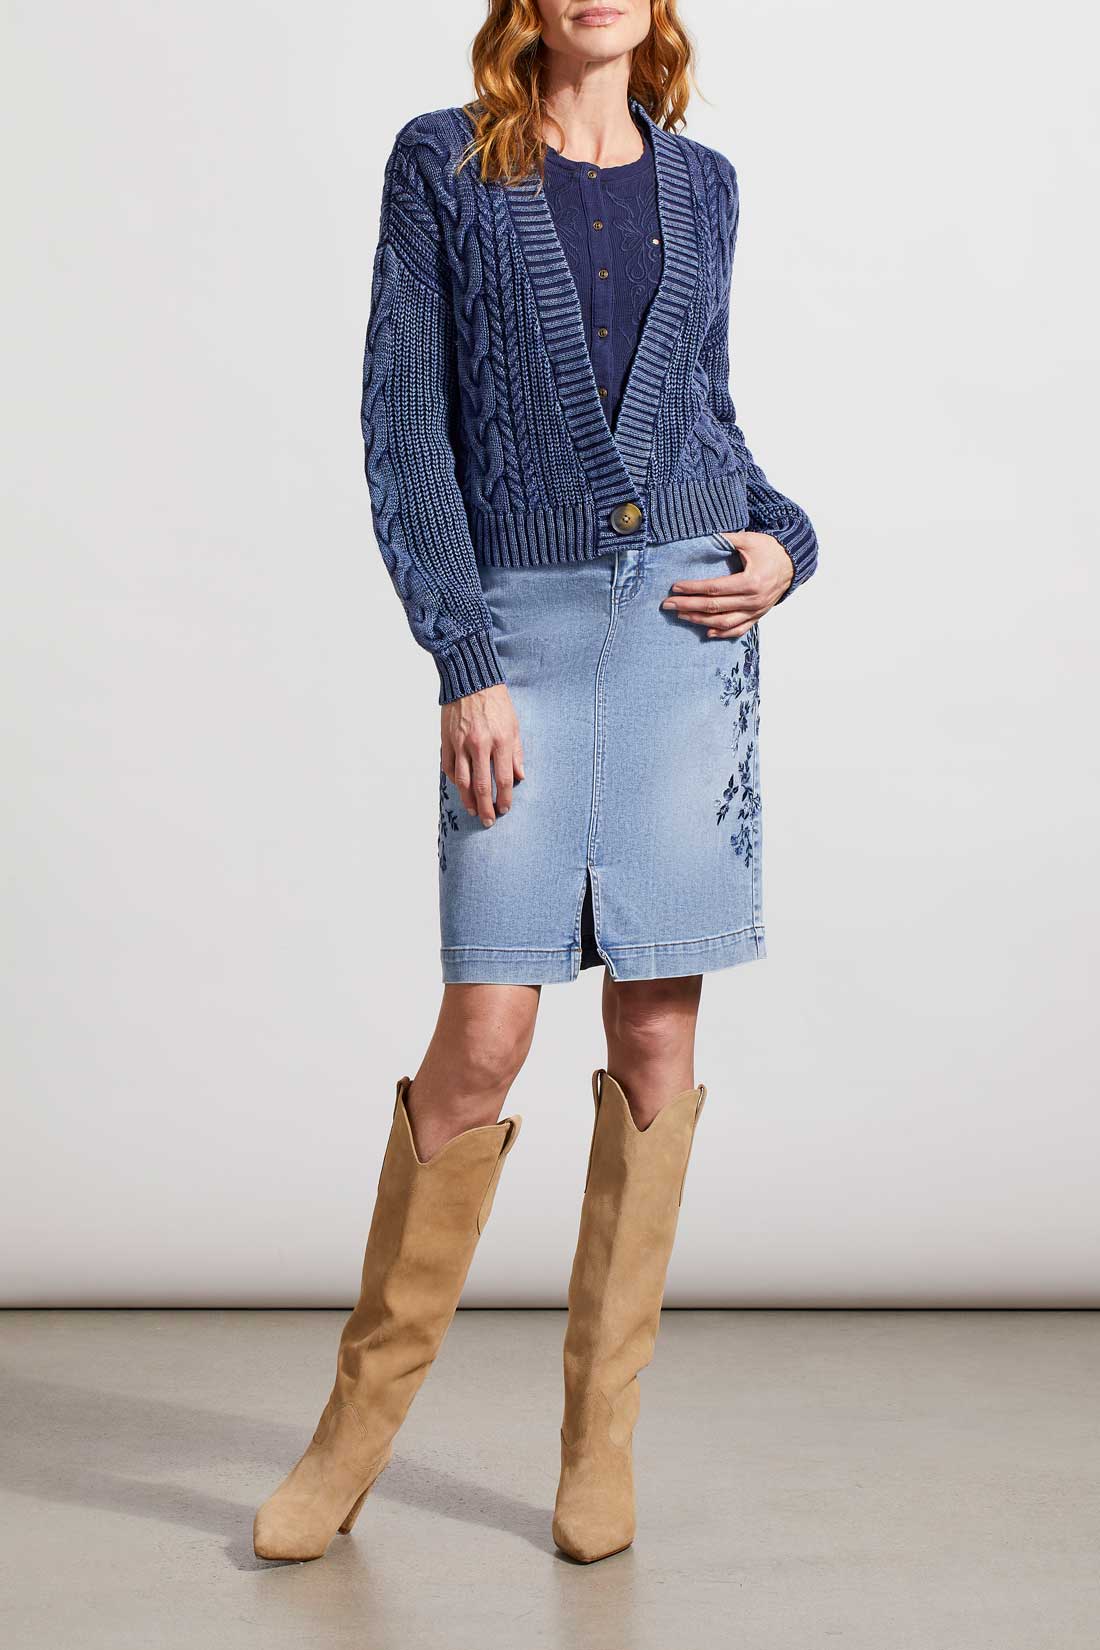 Tribal- Embroidered Skirt- Denim